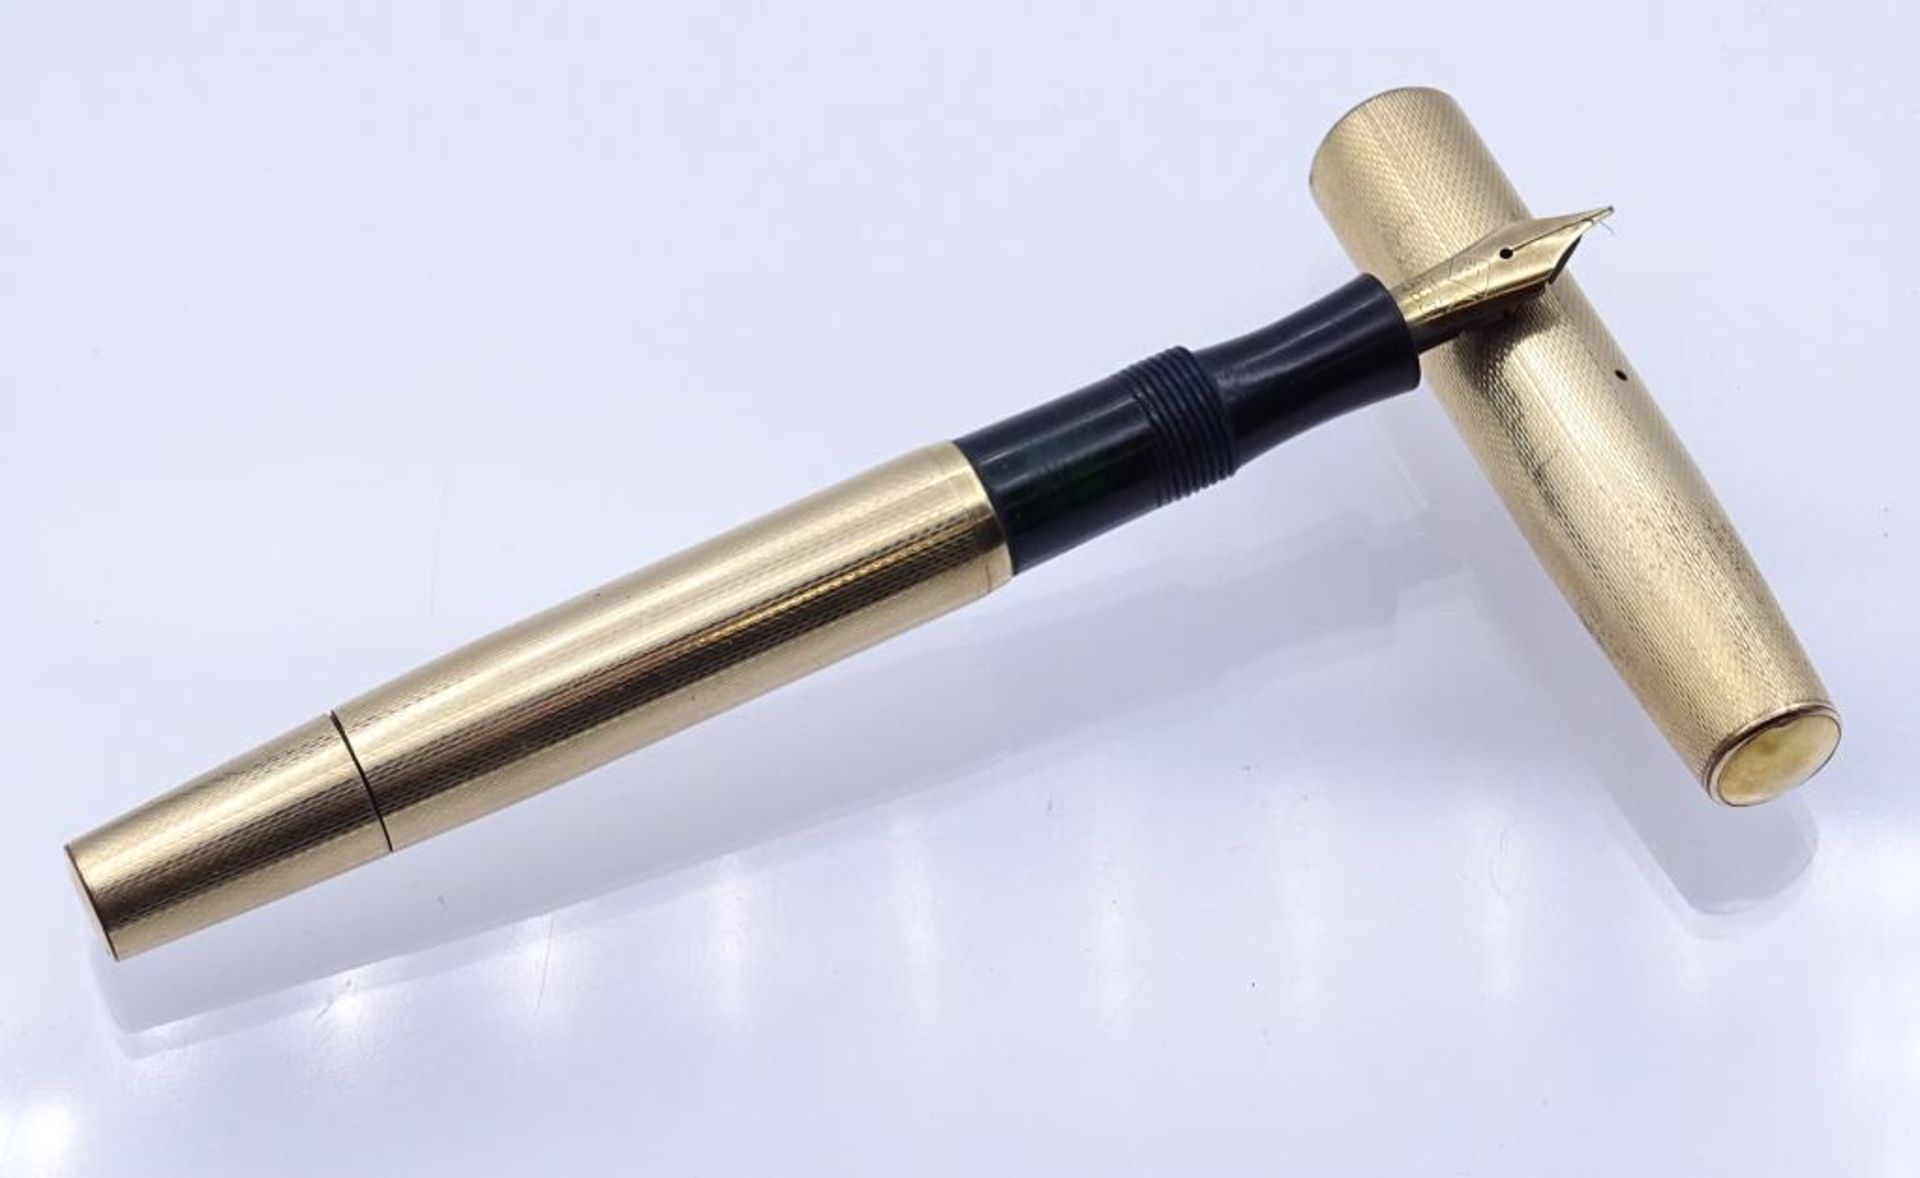 Kolbenfüller mit einer 14K Gold Feder, doublé Gehäu- - -22.61 % buyer's premium on the hammer